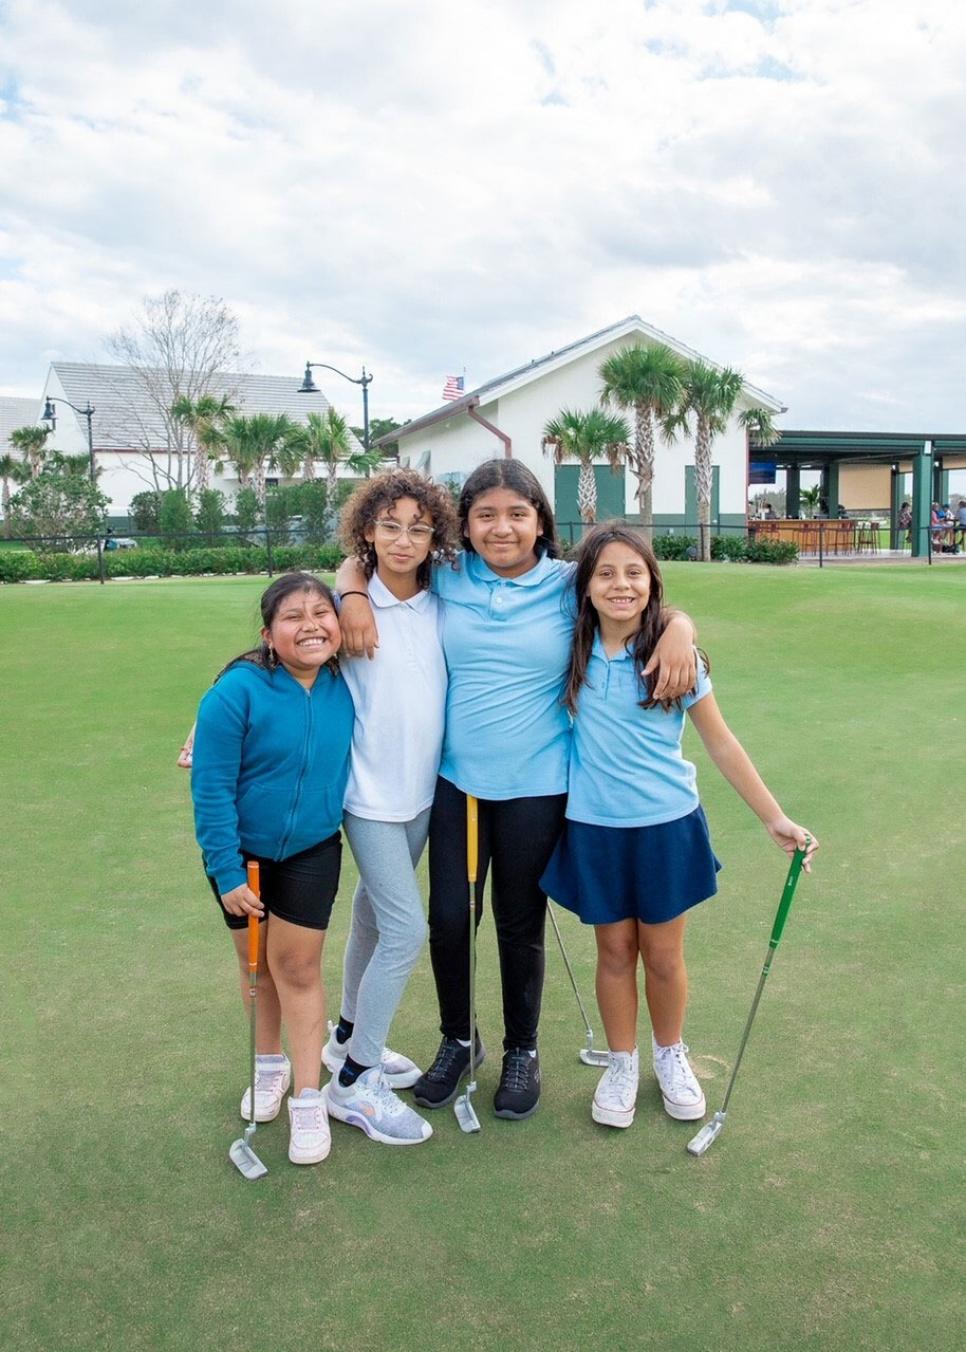 https://www.golfdigest.com/content/dam/images/golfdigest/fullset/2024/2/girls-playing-golf-at-the-park.jpg